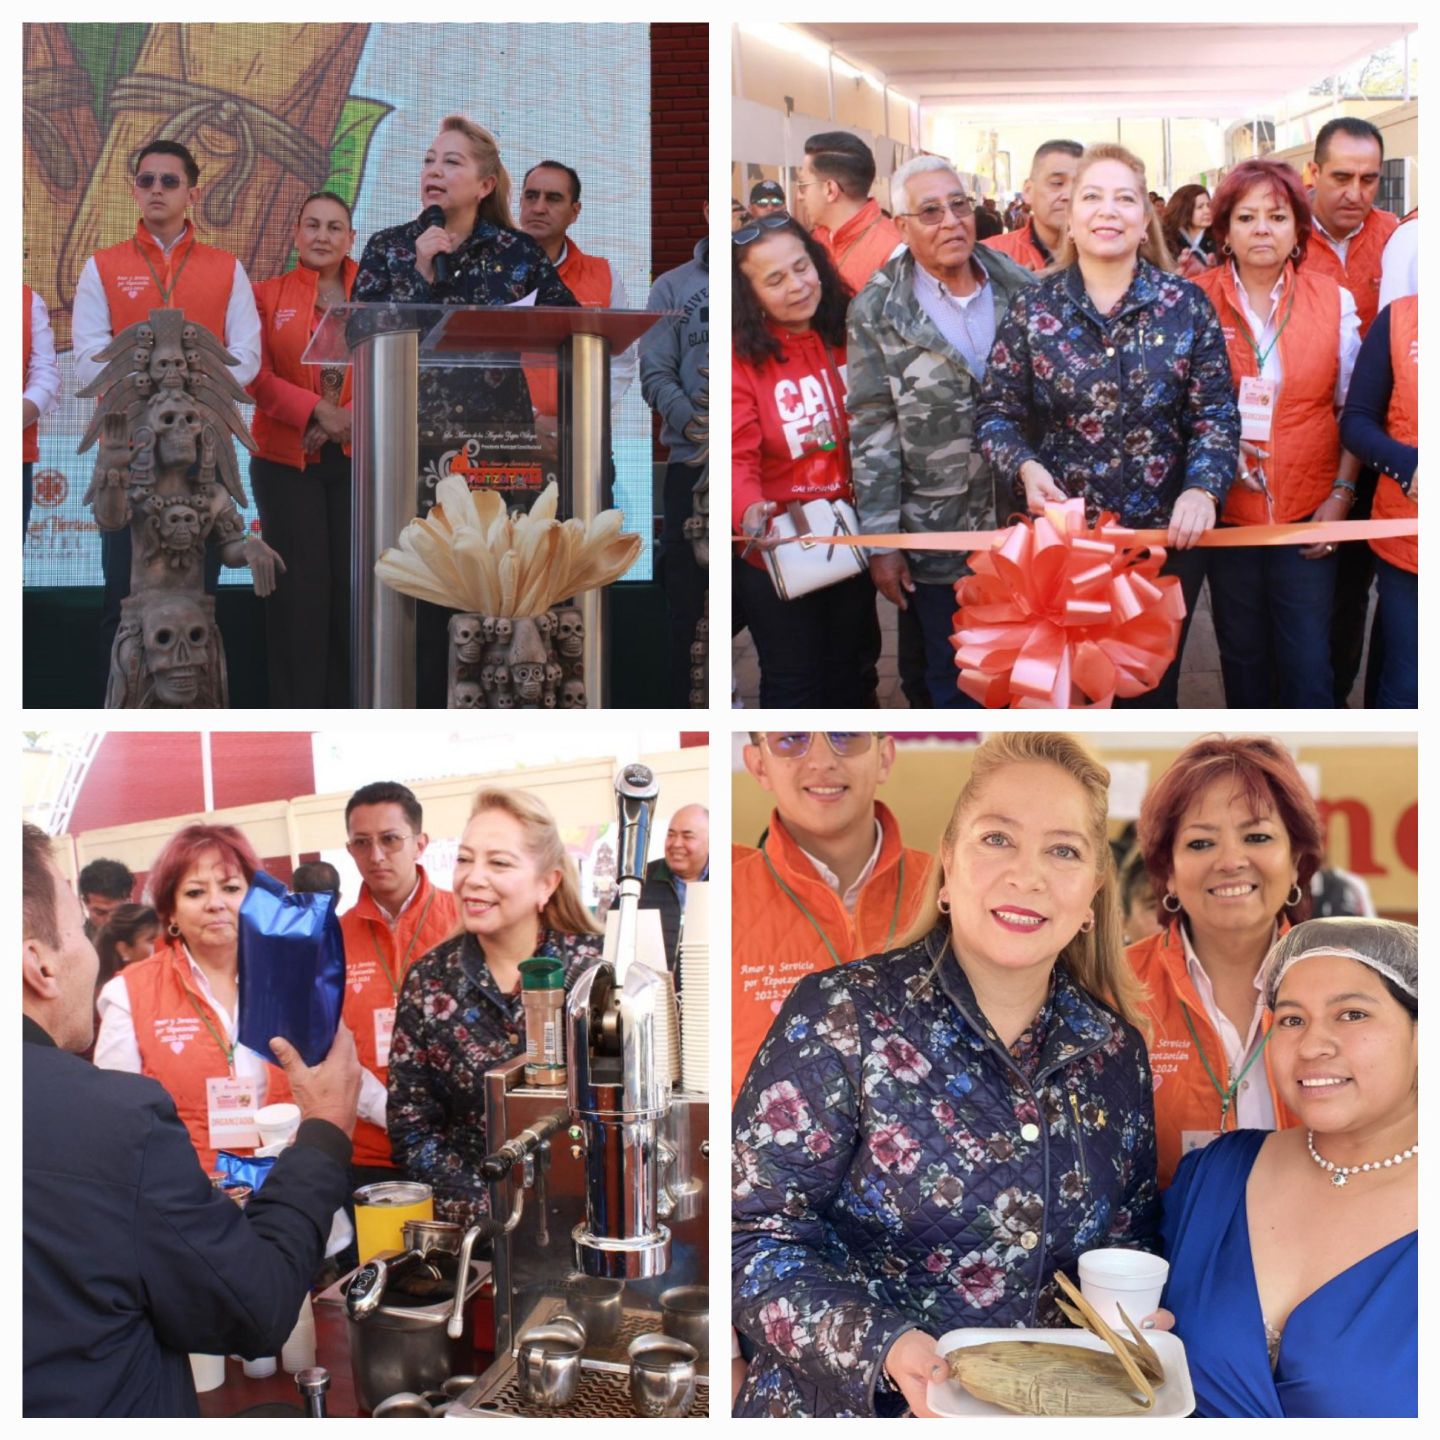 María De los Ángeles Zuppa
Inauguró la primera Feria del Tamal